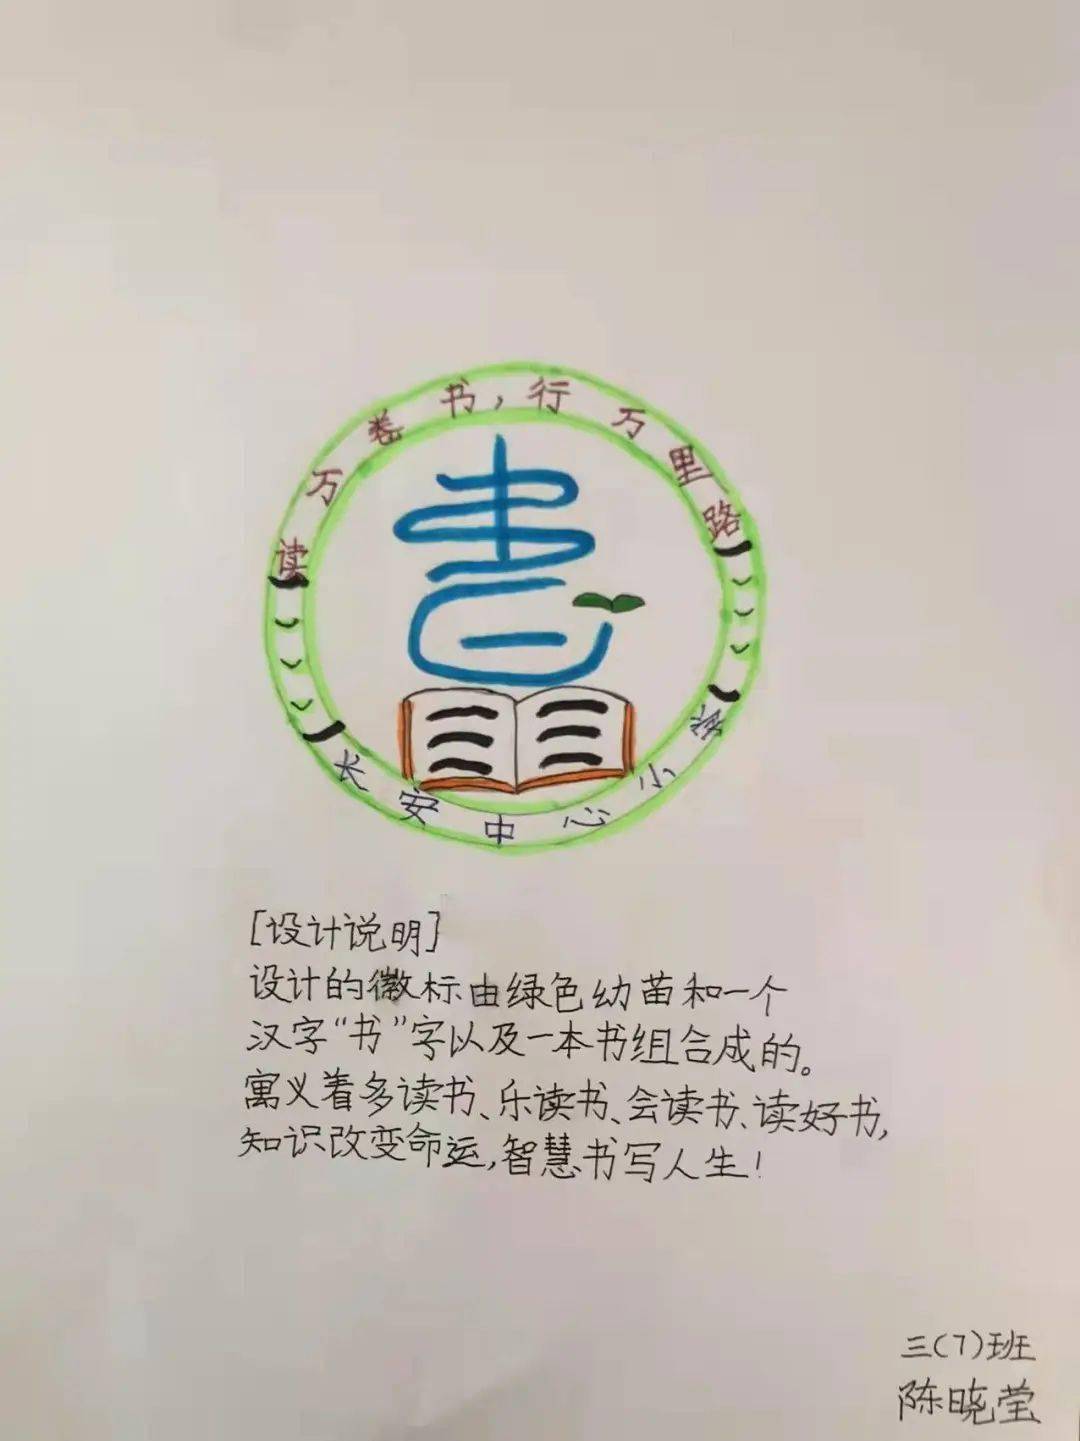 语文节徽标图片